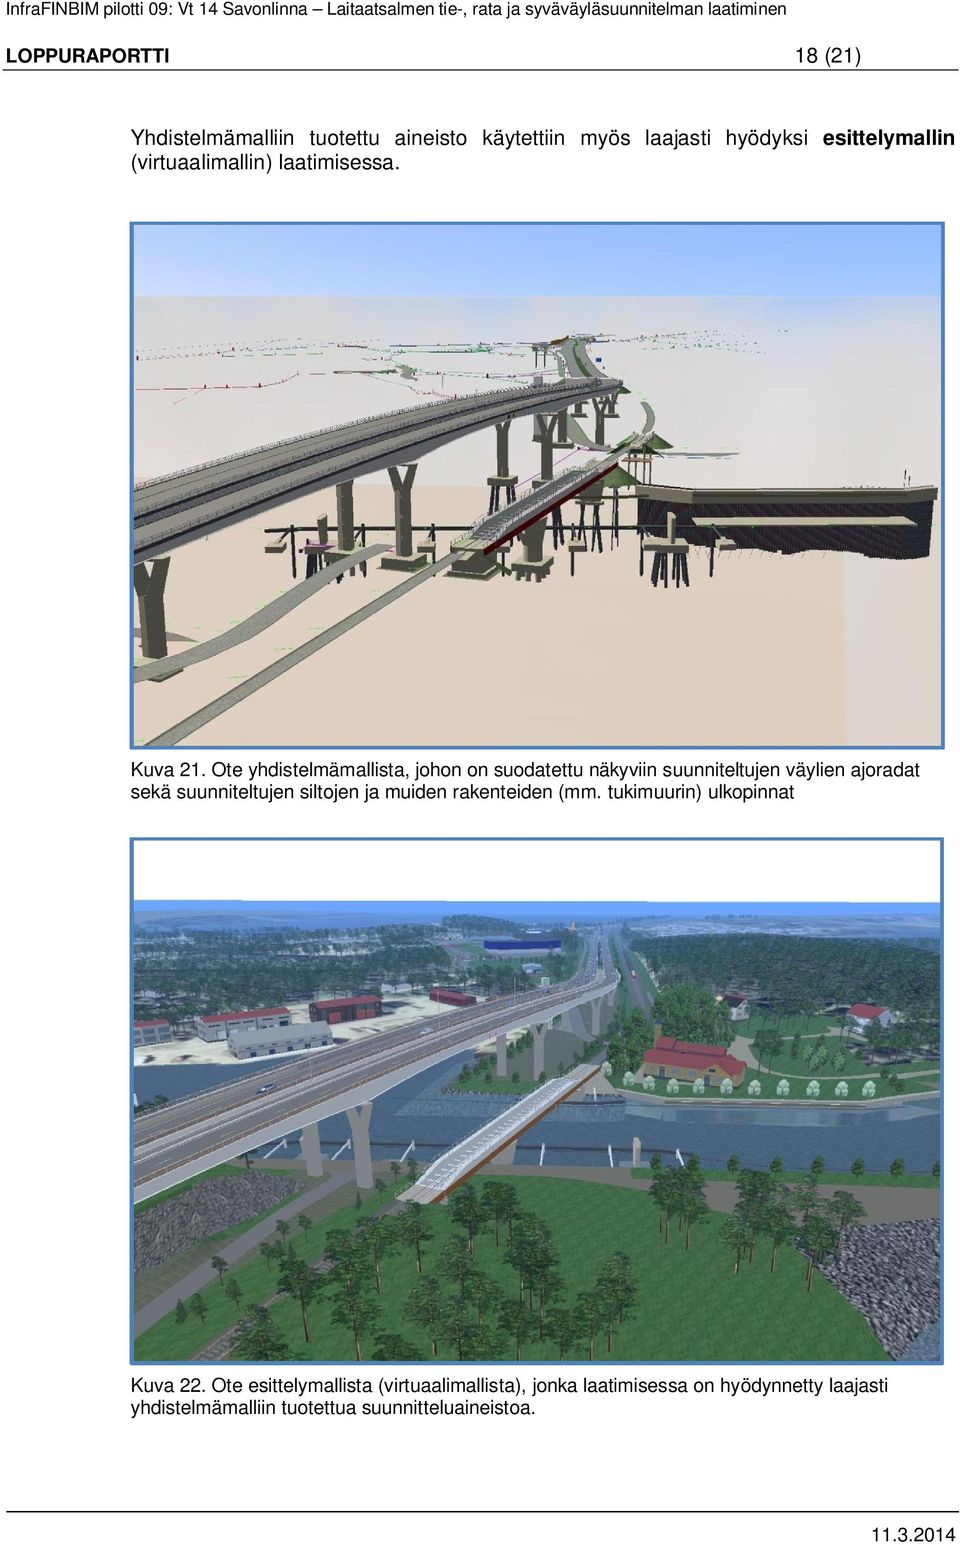 Ote yhdistelmämallista, johon on suodatettu näkyviin suunniteltujen väylien ajoradat sekä suunniteltujen siltojen